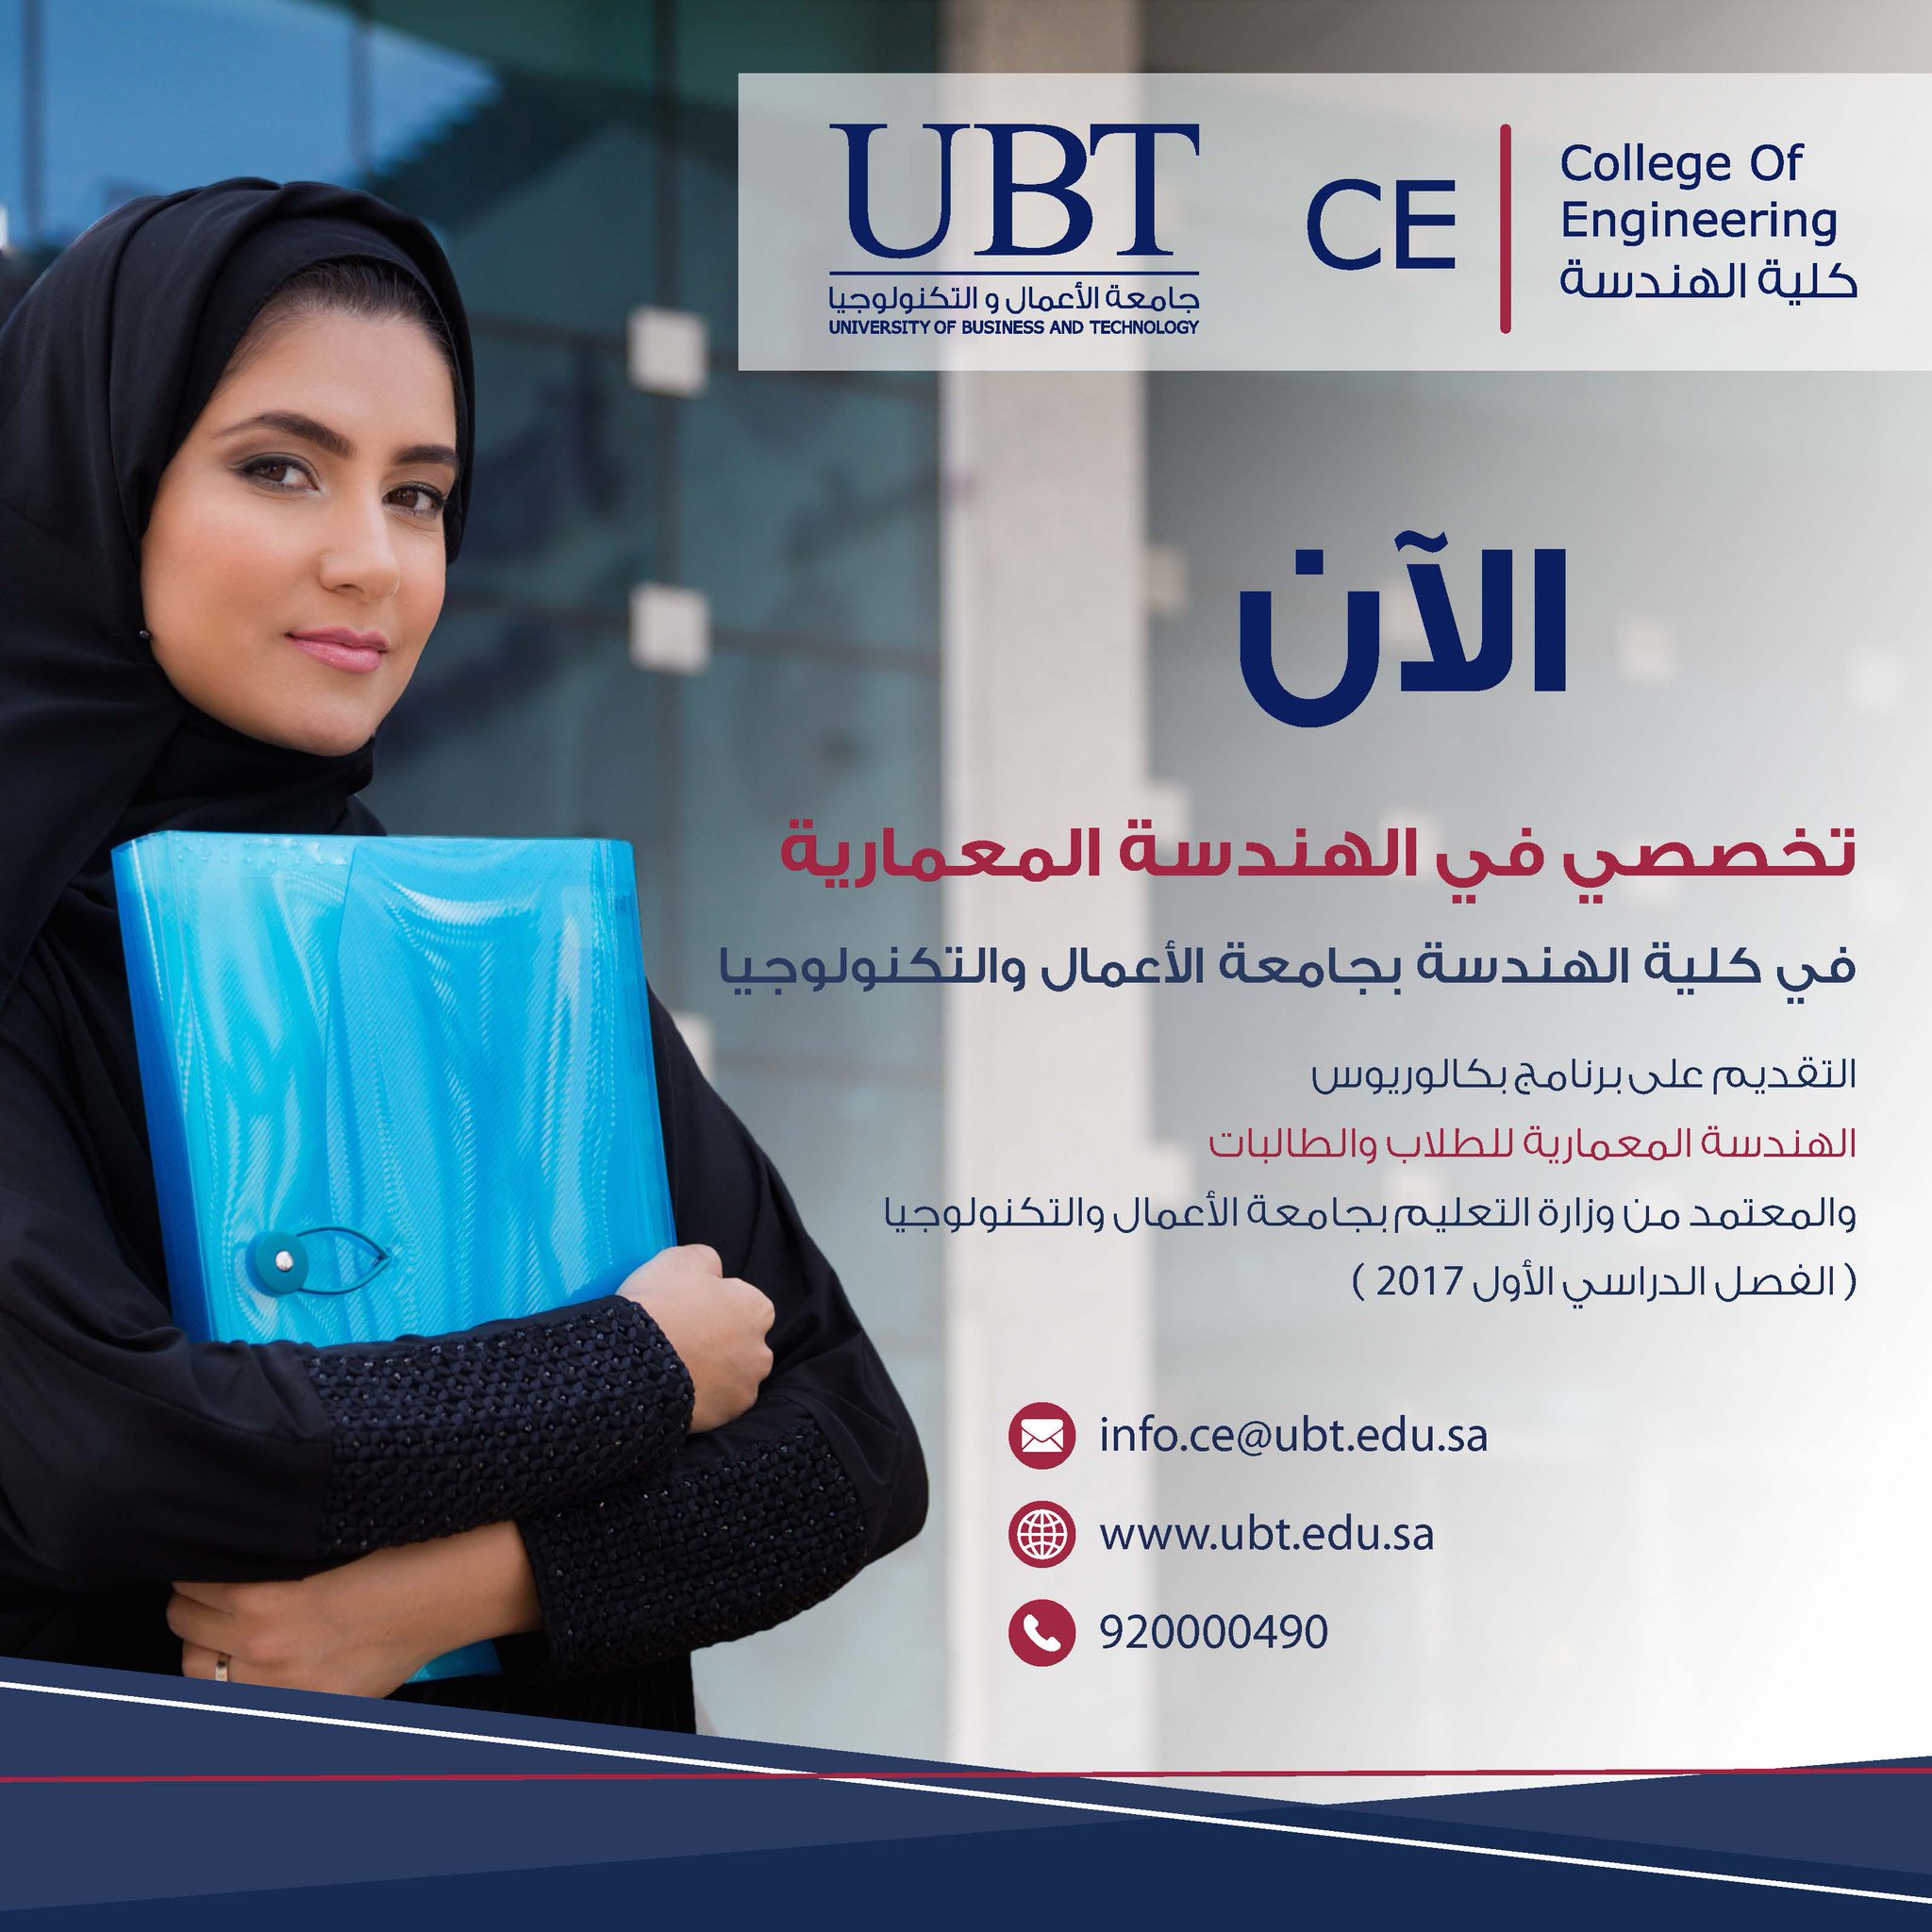 الاعمال والتكنولوجيا جامعة UBT